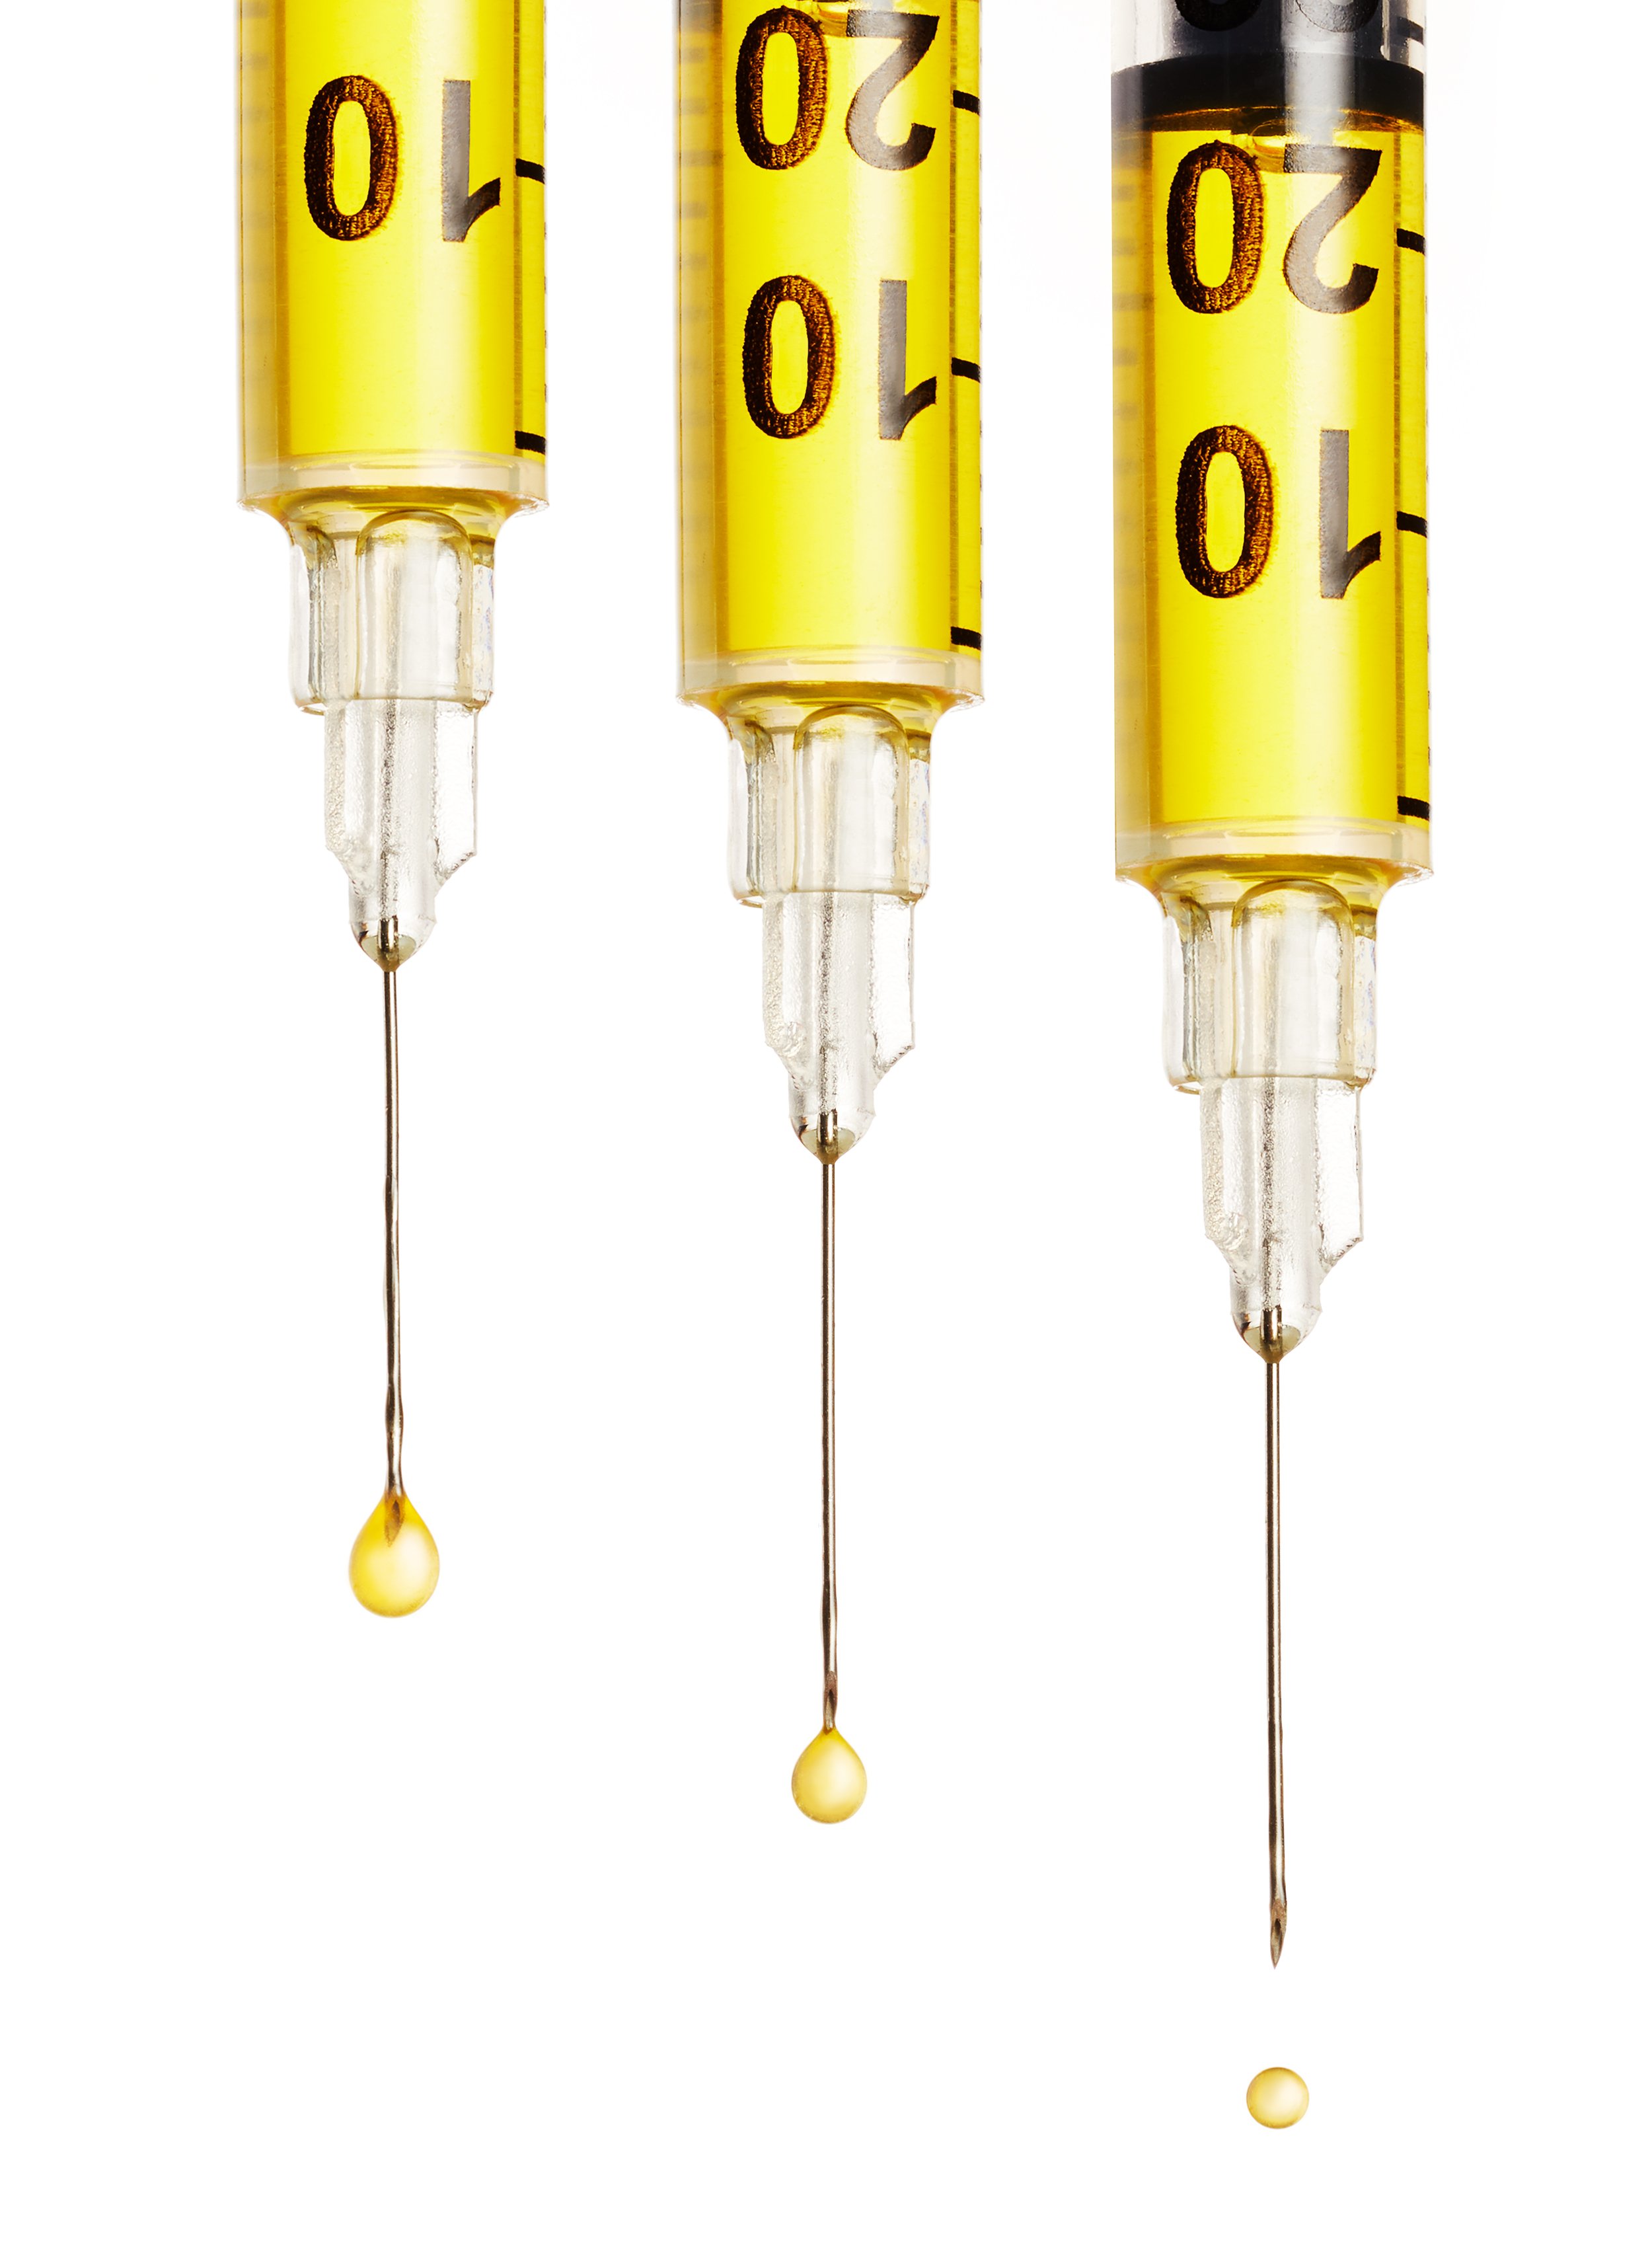 tidepool-BEAM-dan-simmons-vaccine-liquid-medical-syringes.jpeg